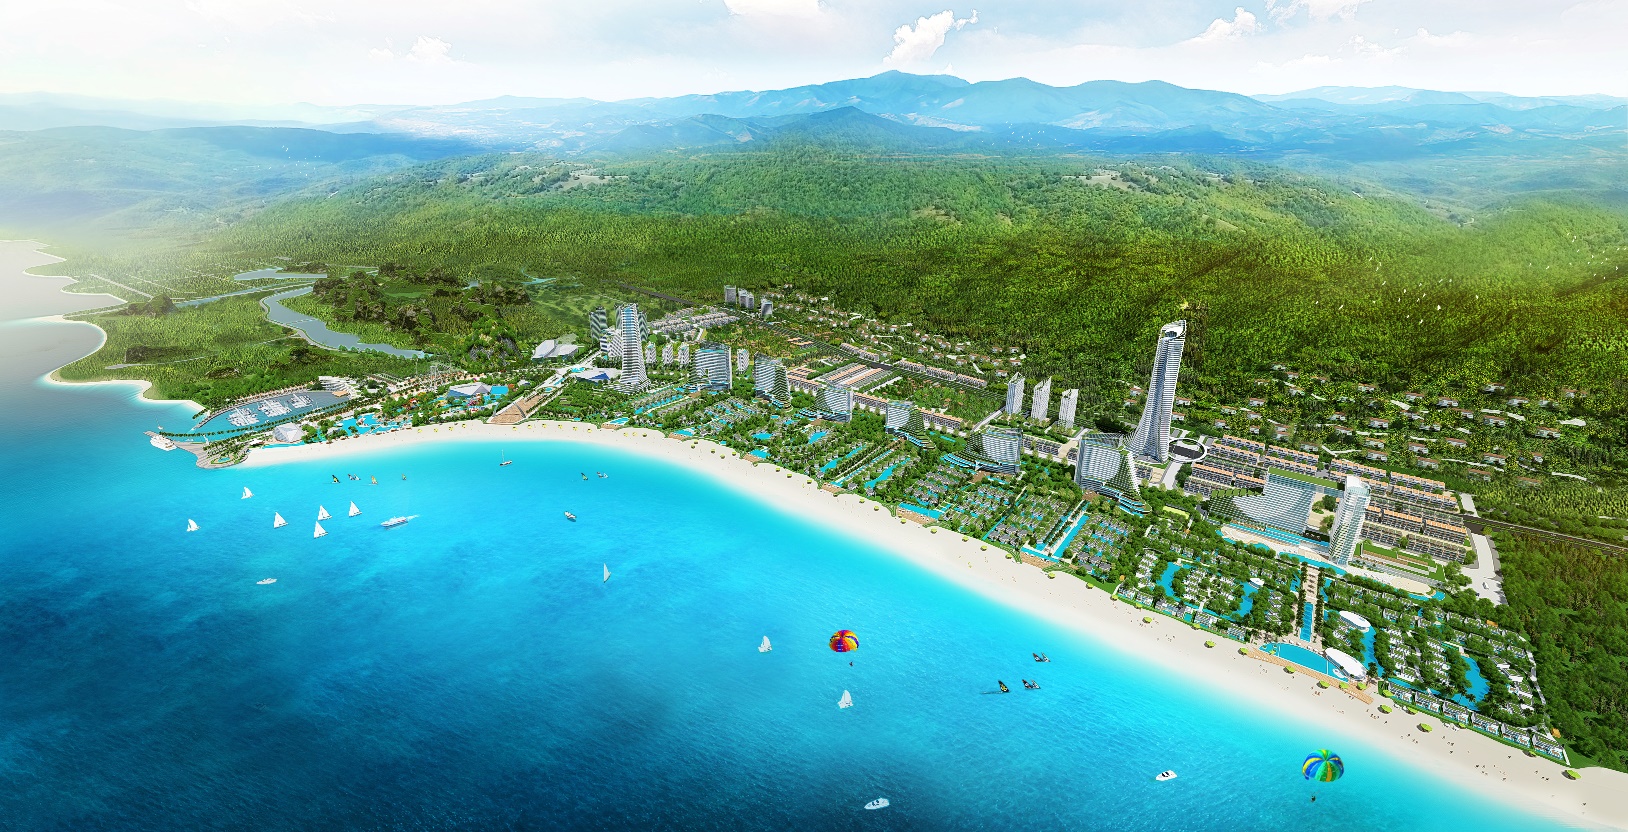 Tổ hợp du lịch nghỉ dưỡng Sonasea Vân Đồn Harbor City quy mô 358.3 ha tại Quảng Ninh là dự án trọng điểm của Tập đoàn CEO trong năm 2019 và các năm tiếp theo